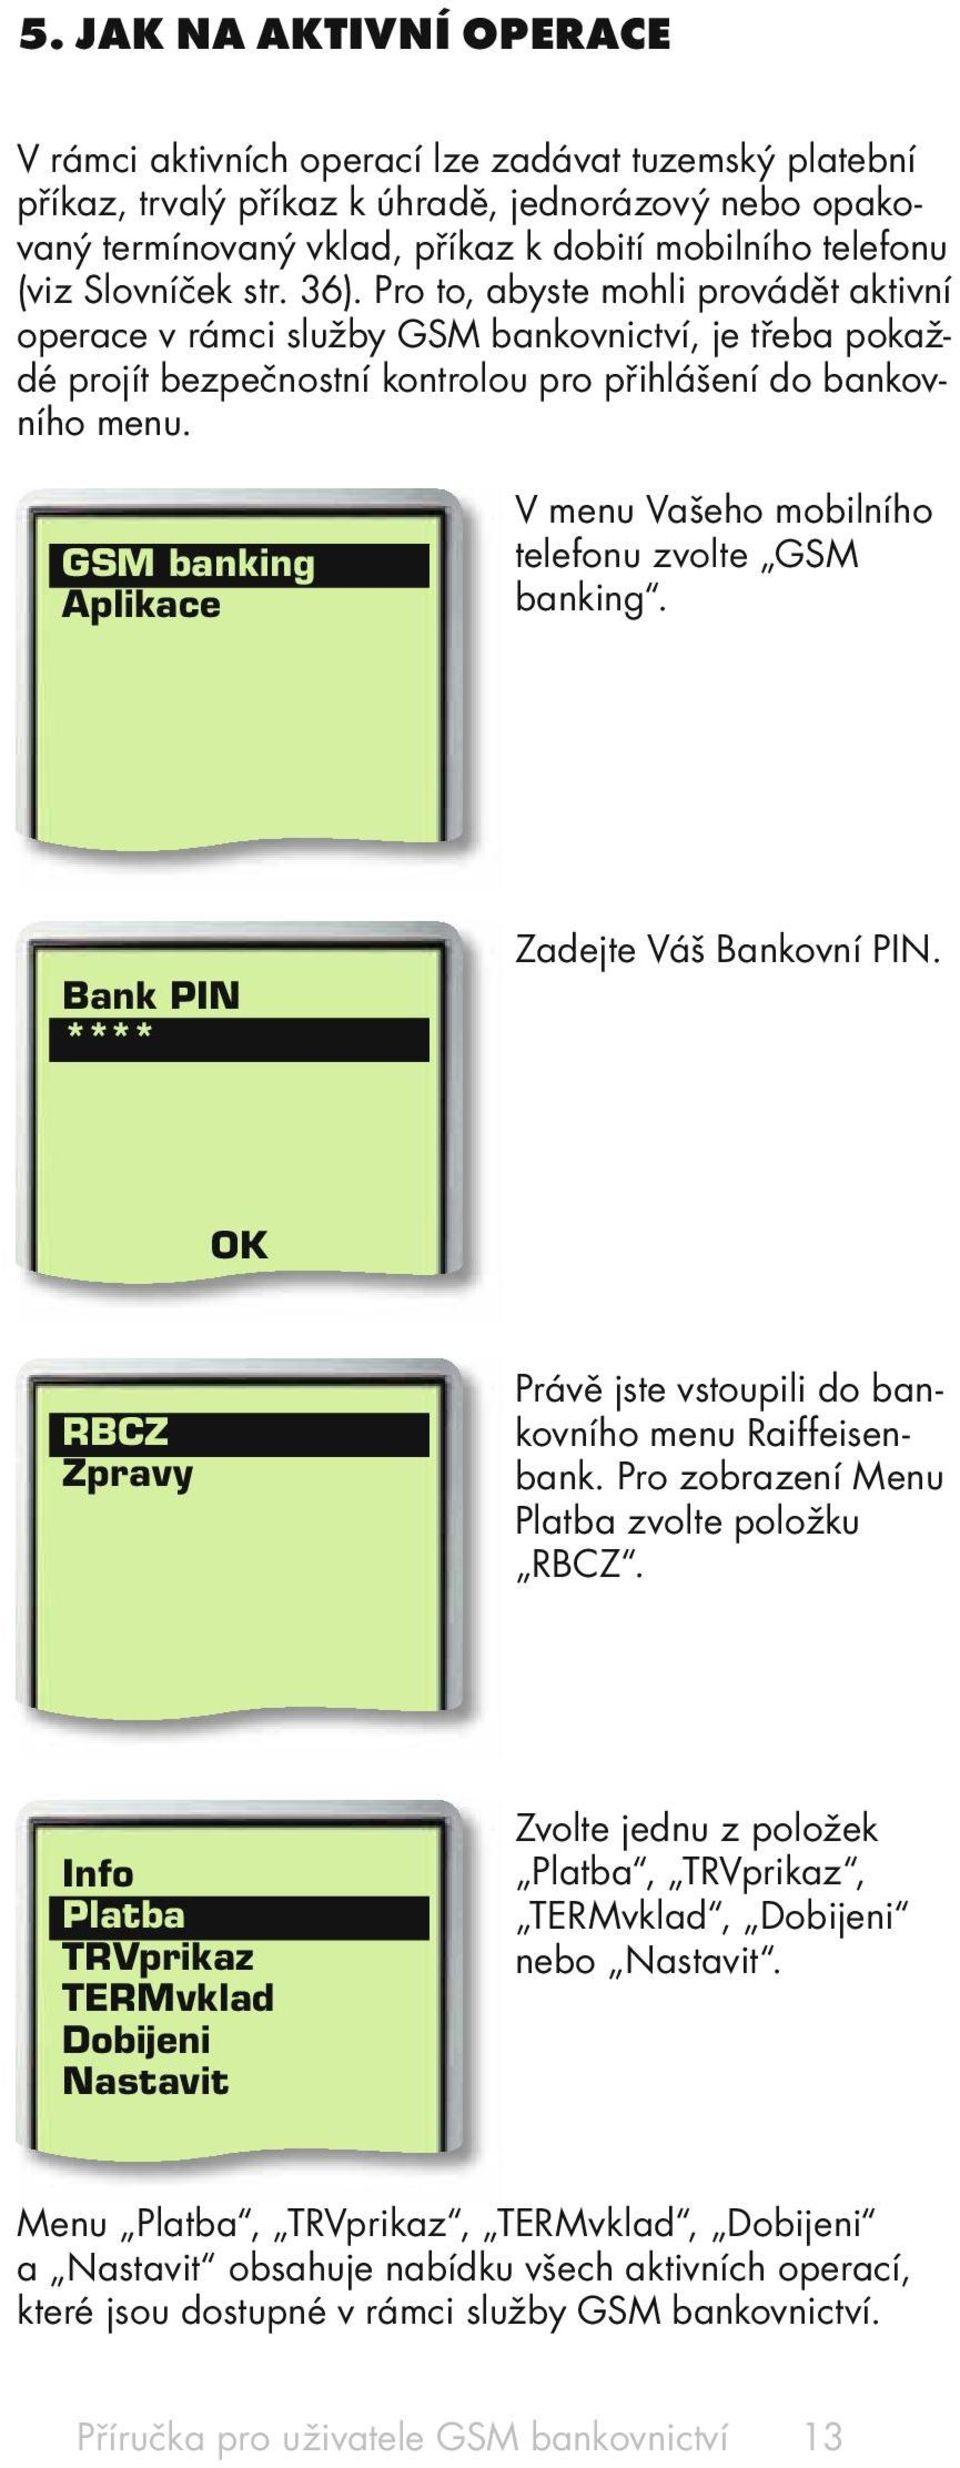 GSM banking Aplikace V menu Vašeho mobilního telefonu zvolte GSM banking. Bank PIN **** Zadejte Váš Bankovní PIN. RBCZ Zpravy Právě jste vstoupili do bankovního menu Raiffeisenbank.